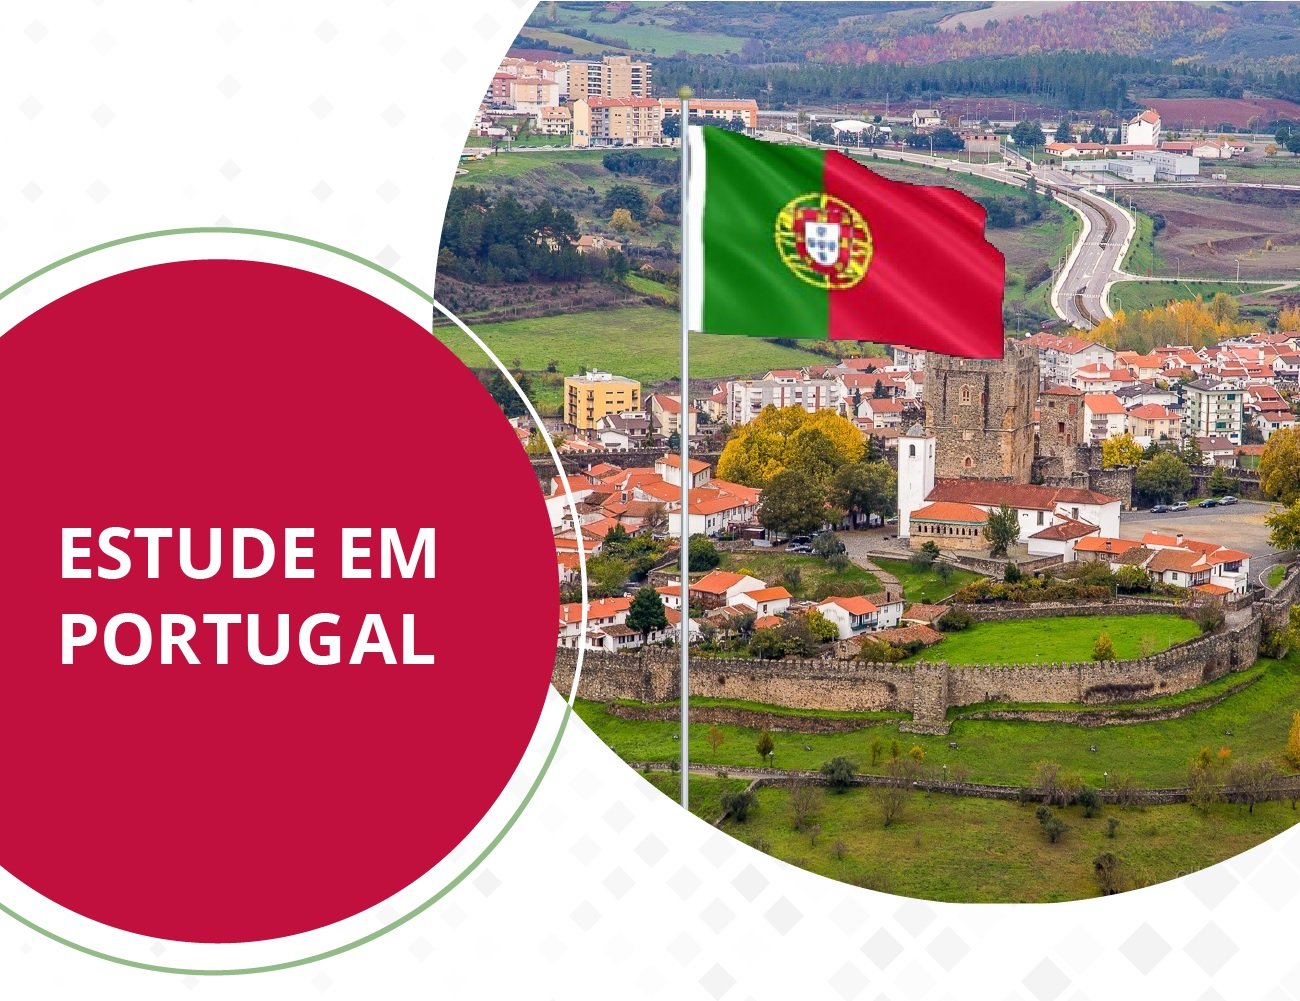 Imagem da cidade de Bragança, com o título Estude em Portugal